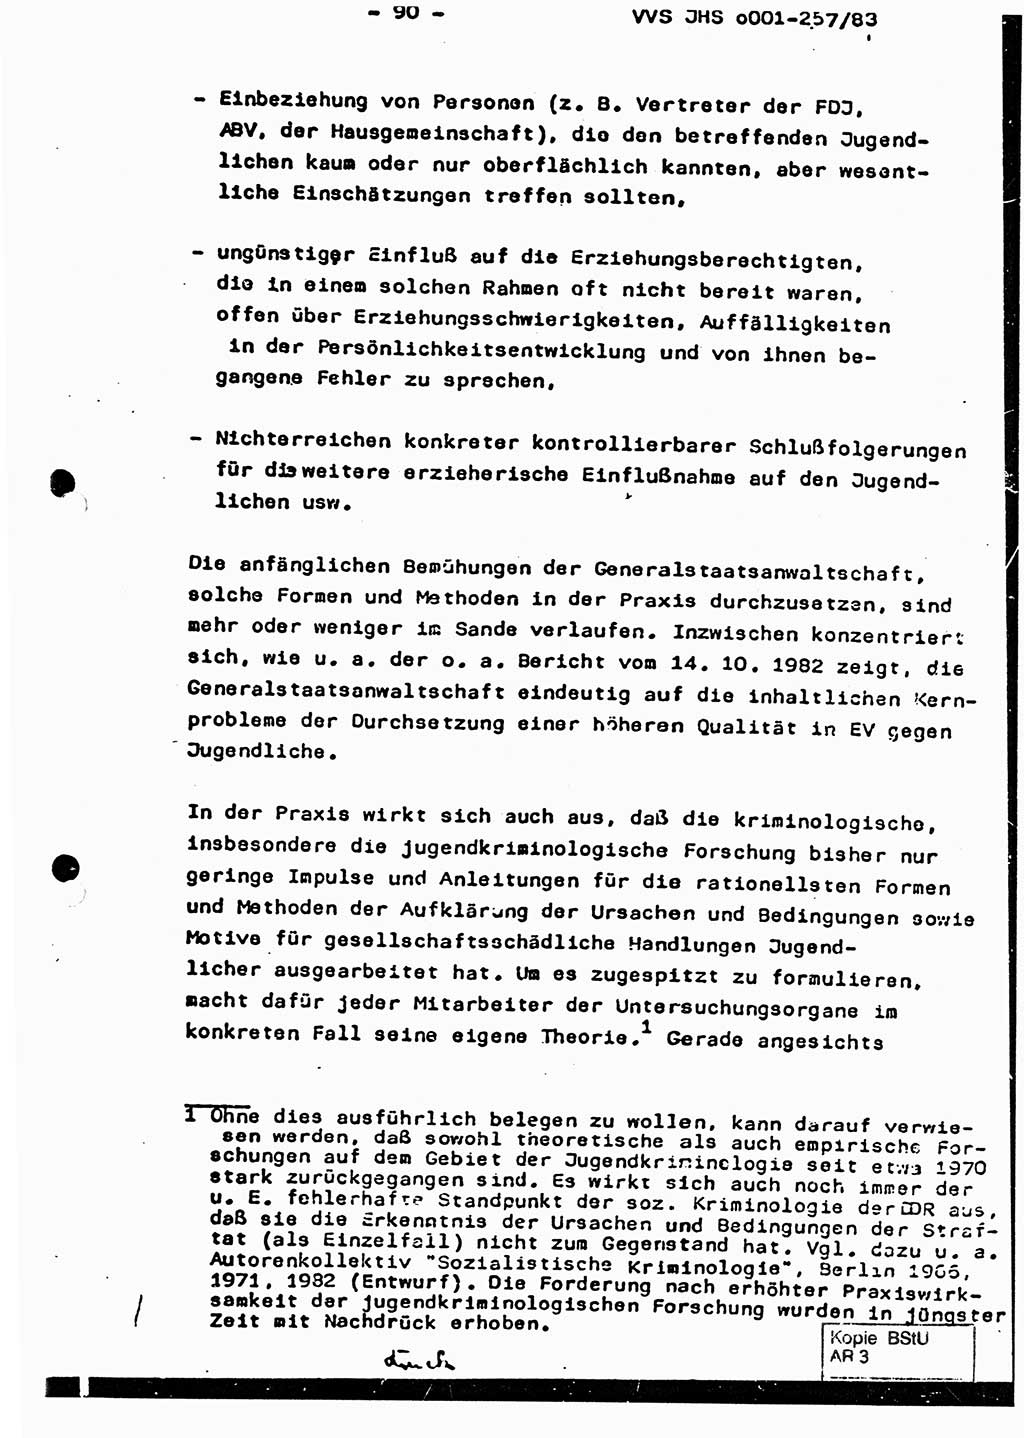 Dissertation, Oberst Helmut Lubas (BV Mdg.), Oberstleutnant Manfred Eschberger (HA IX), Oberleutnant Hans-Jürgen Ludwig (JHS), Ministerium für Staatssicherheit (MfS) [Deutsche Demokratische Republik (DDR)], Juristische Hochschule (JHS), Vertrauliche Verschlußsache (VVS) o001-257/83, Potsdam 1983, Seite 90 (Diss. MfS DDR JHS VVS o001-257/83 1983, S. 90)